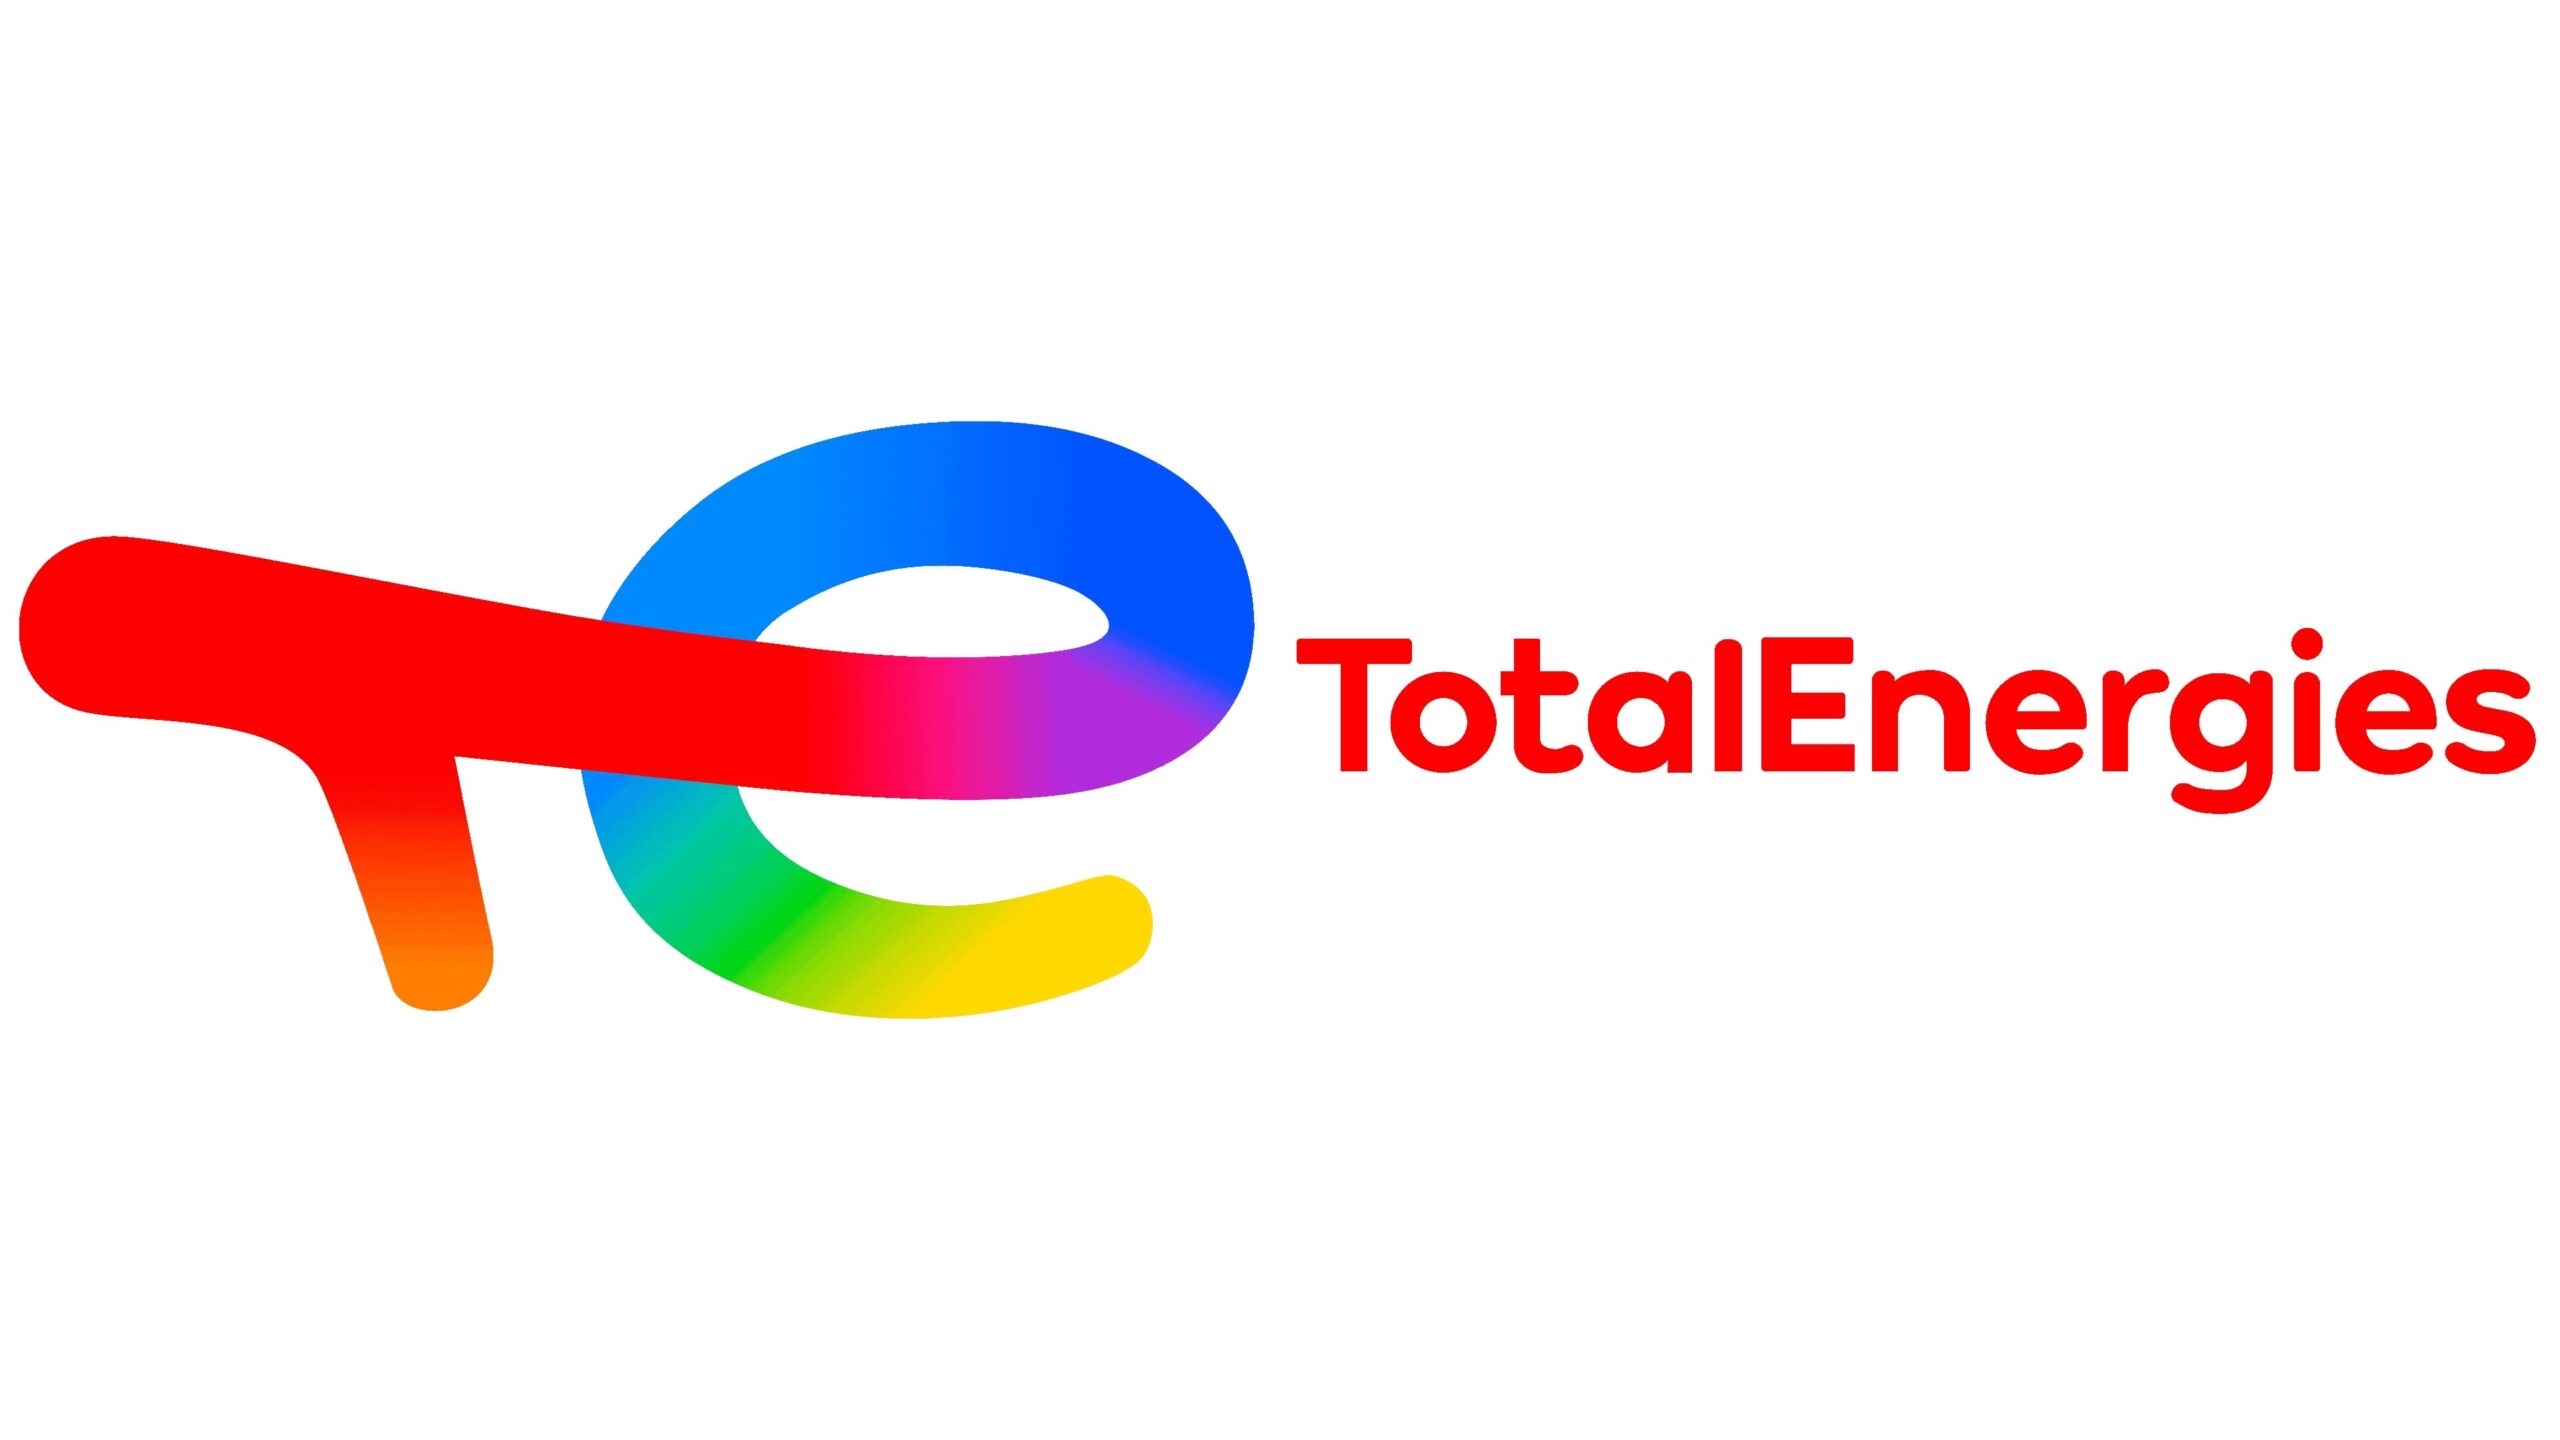 Total-Logo